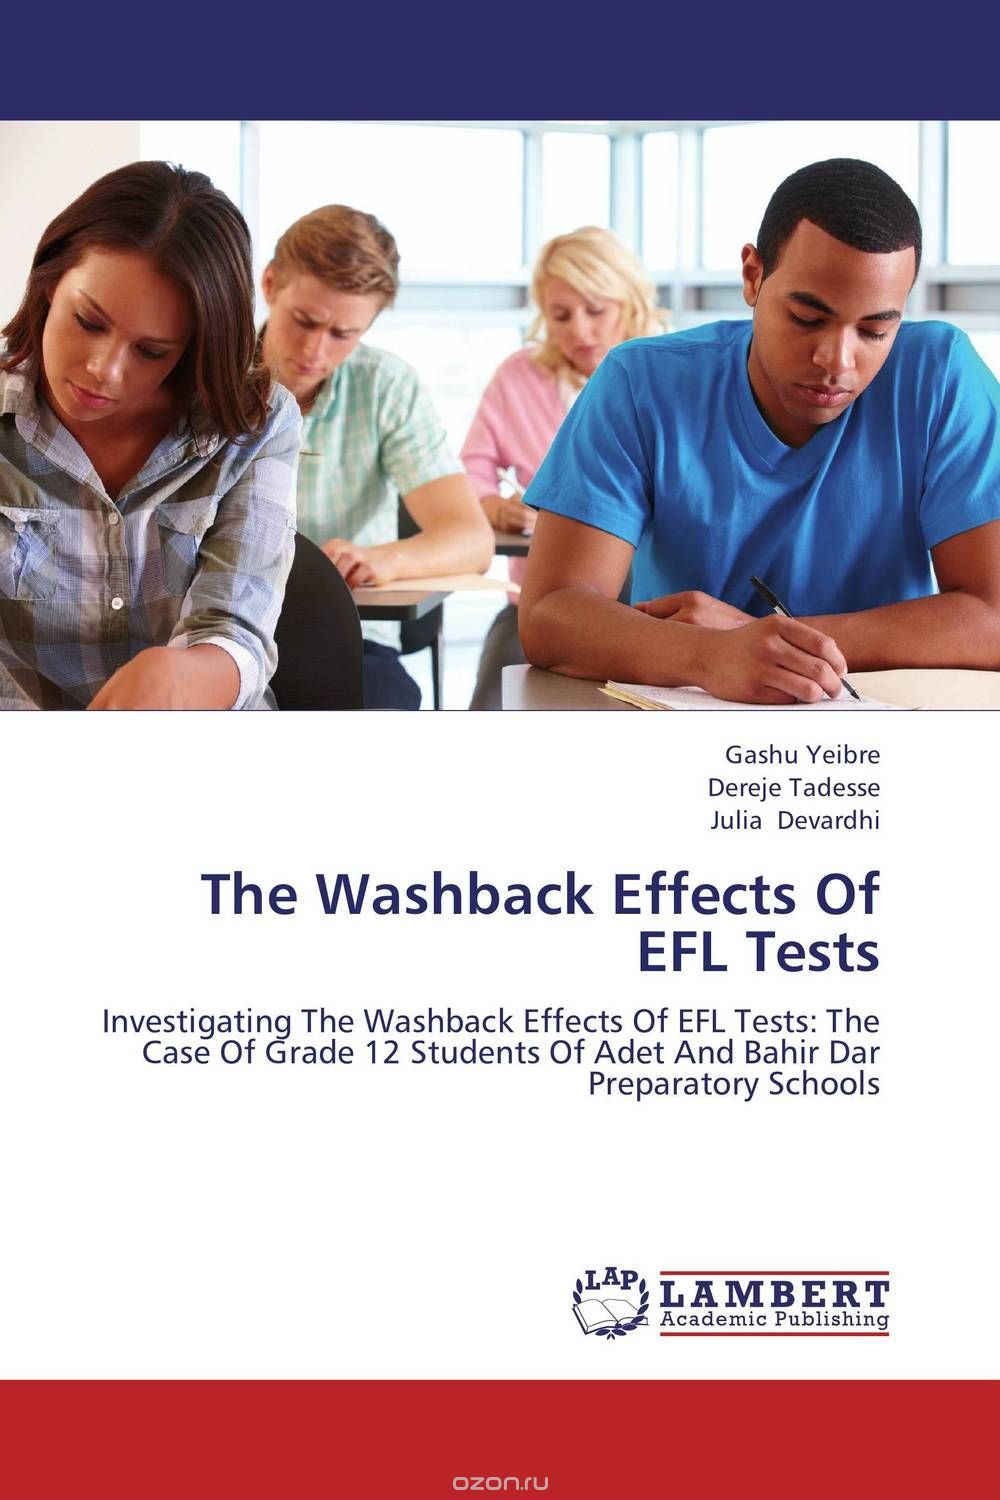 Скачать книгу "The Washback Effects Of EFL Tests"